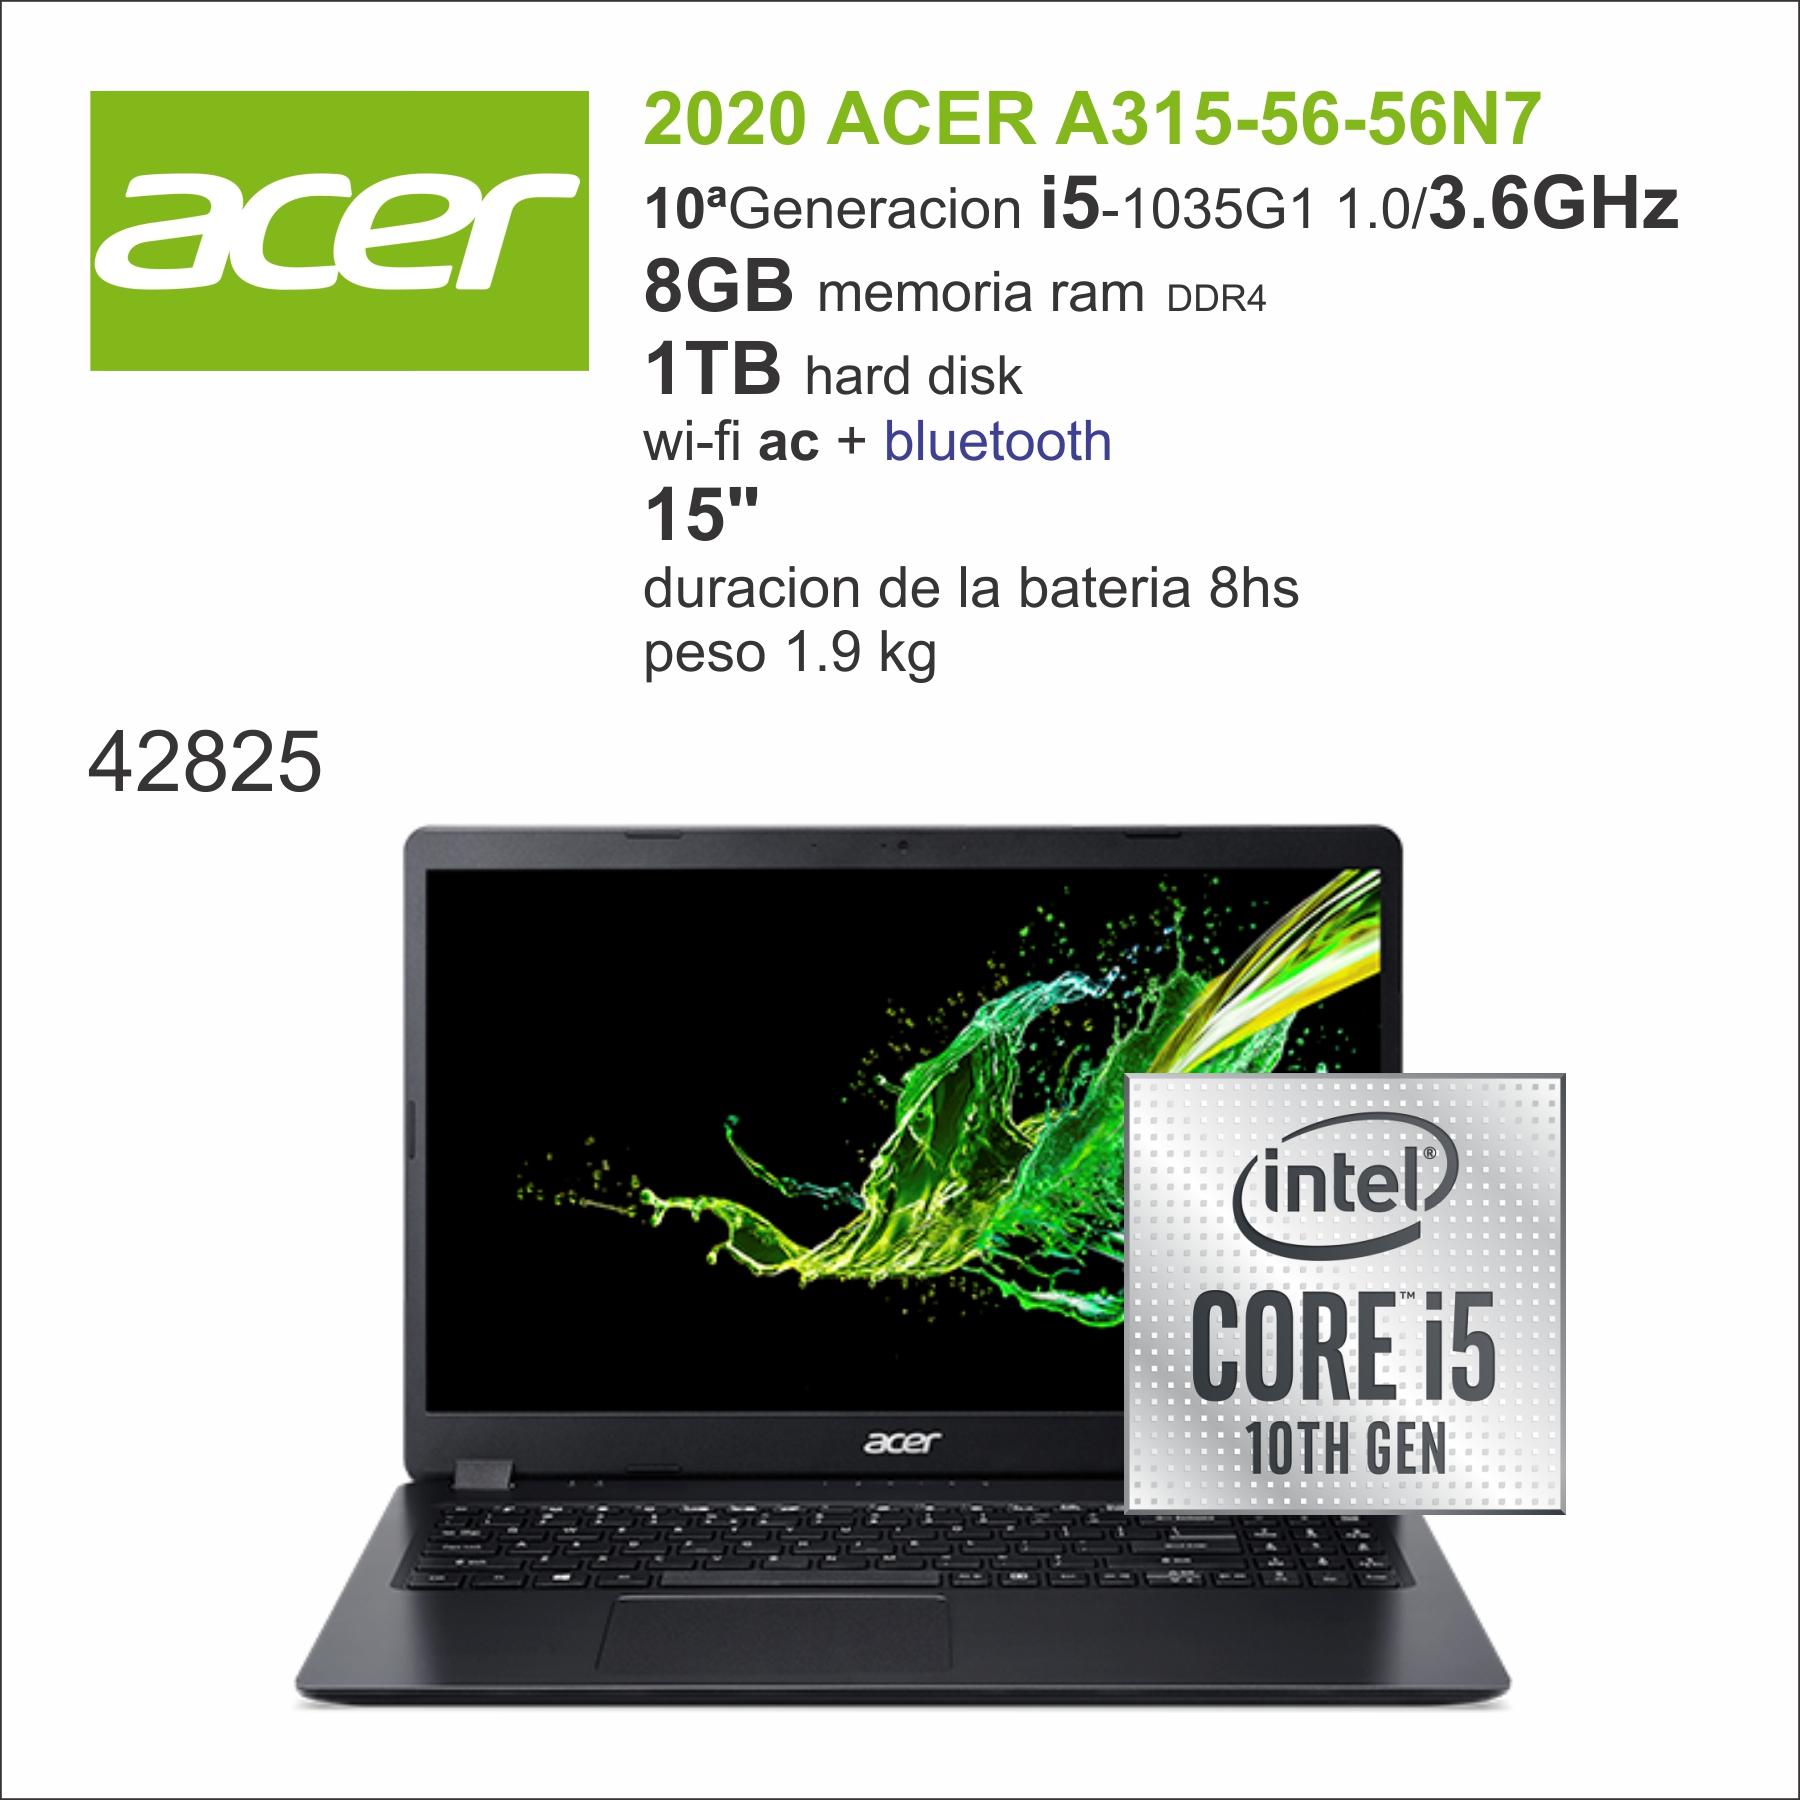 PC Portable 8GB Ram 3.60 GHz 1TB HDD i5-1035G1 Acer ASPIRE 3-A315